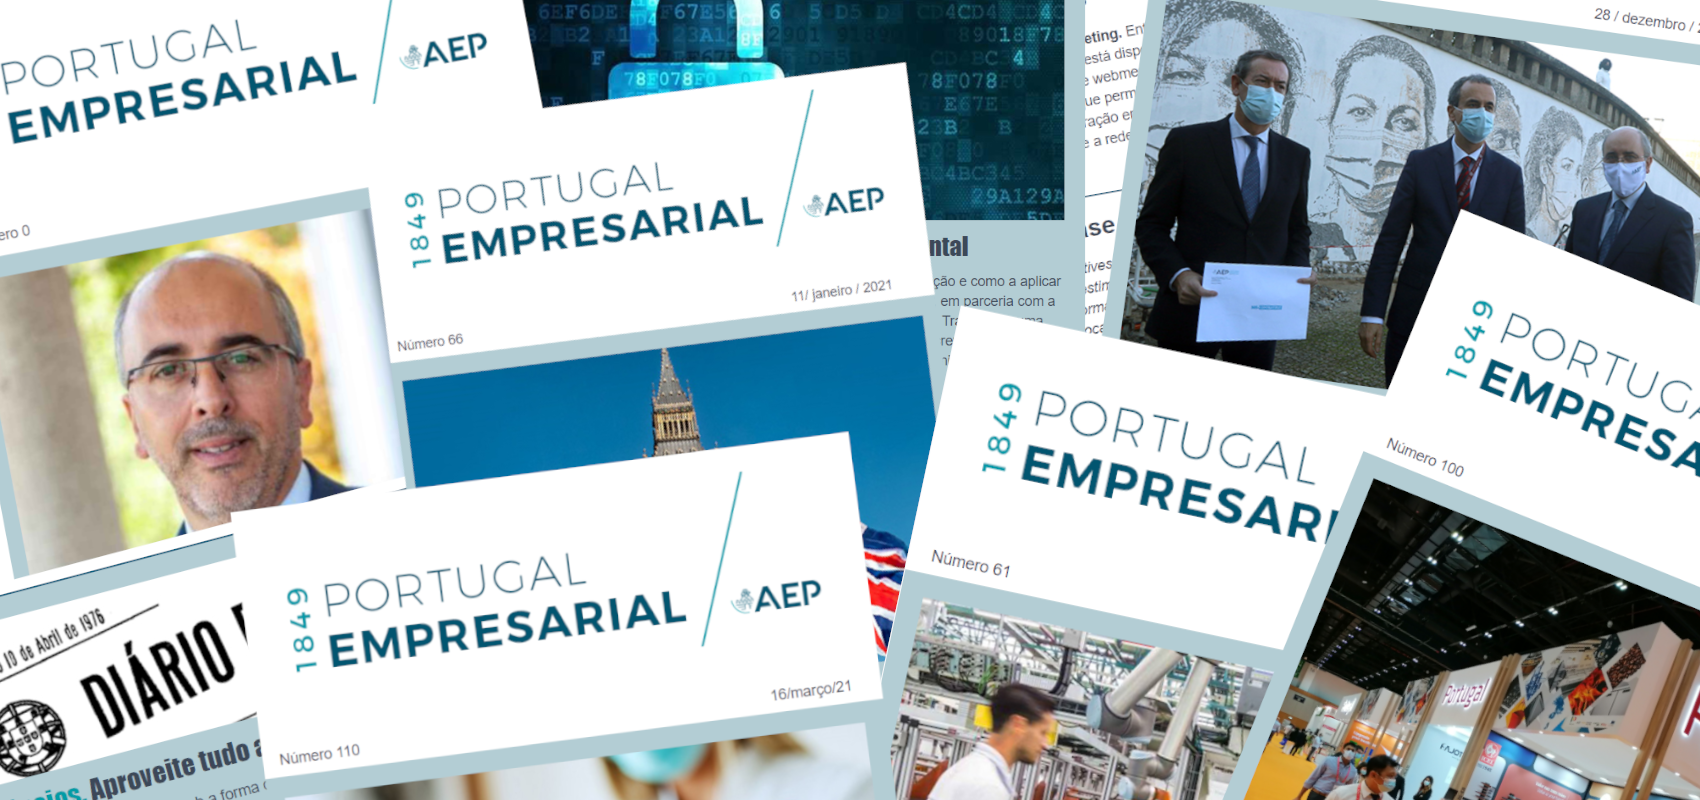 Portugal Empresarial